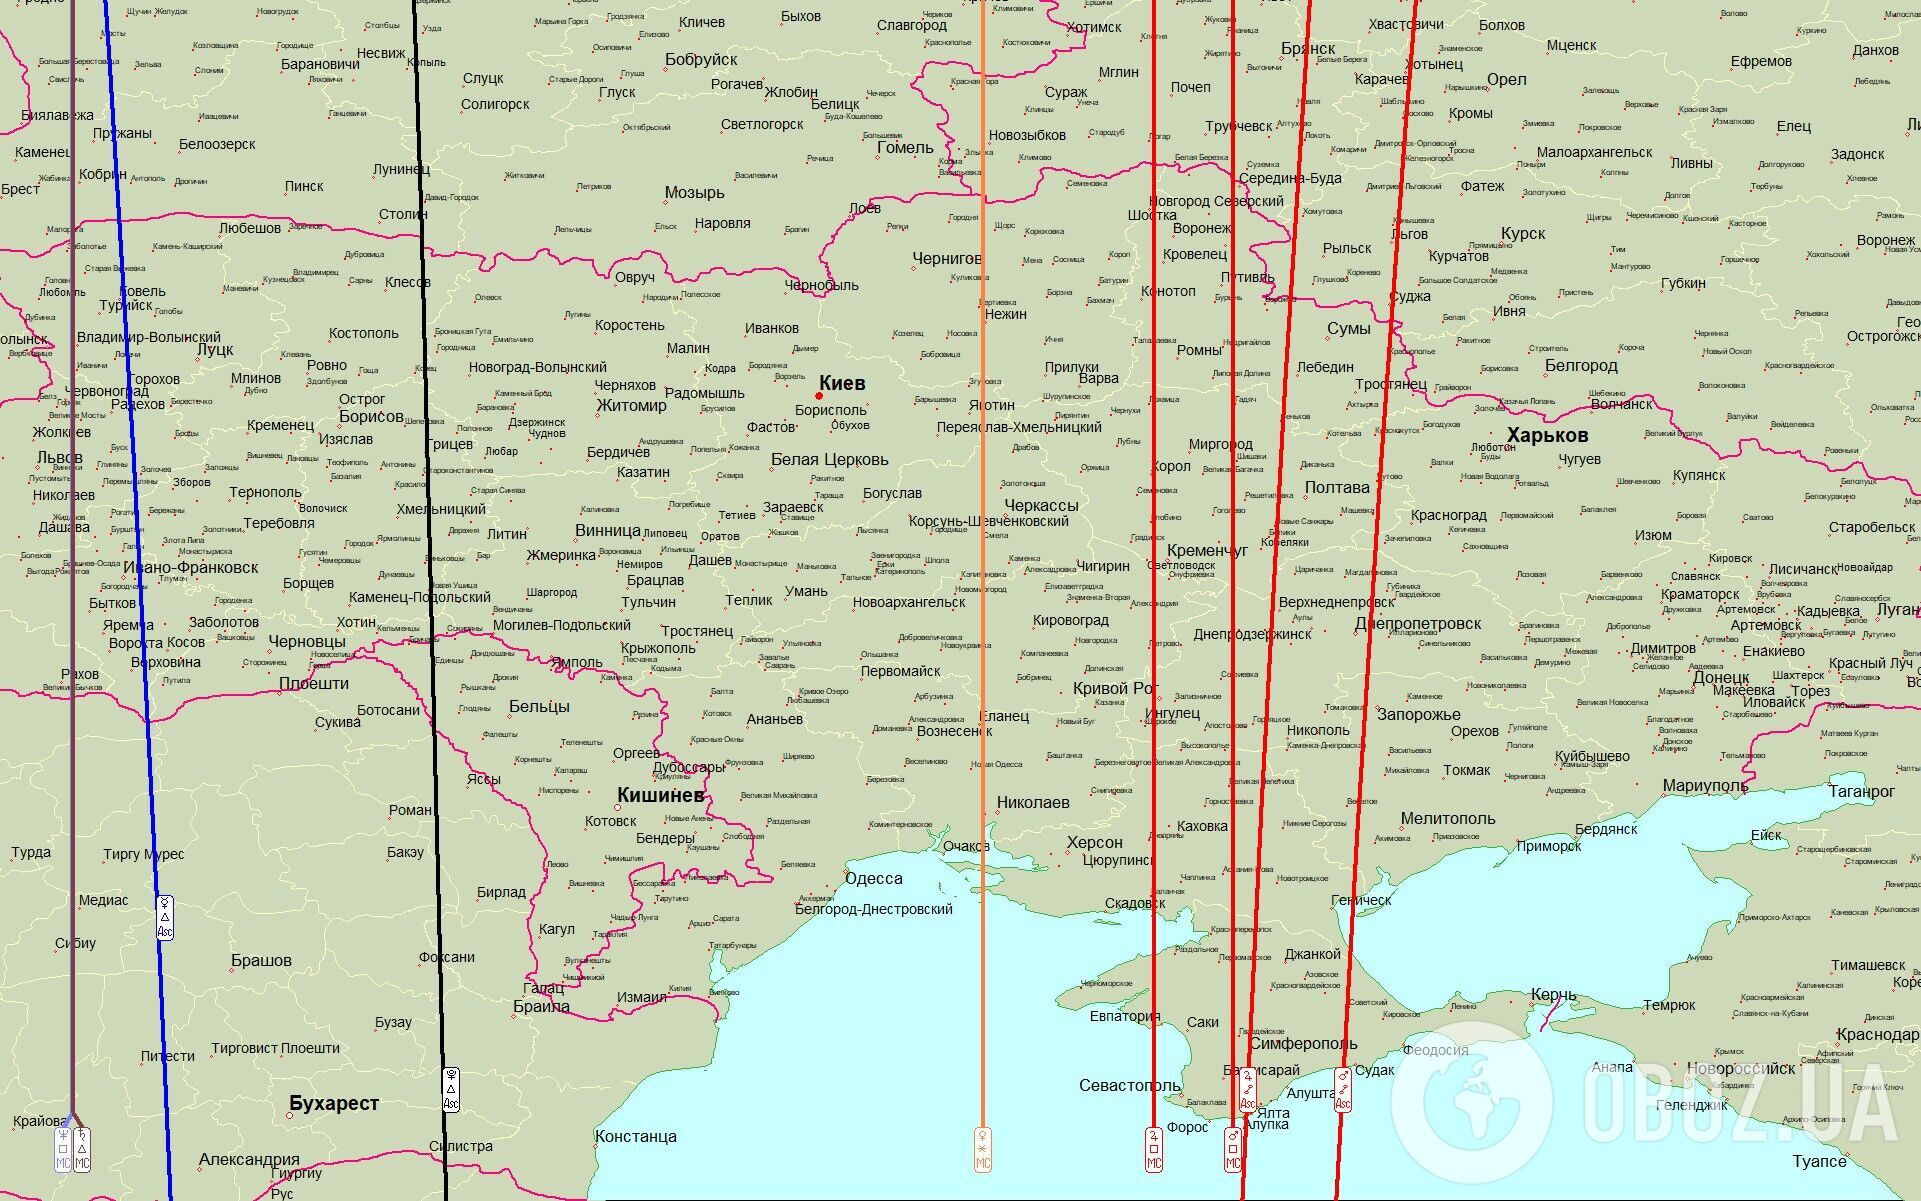 Лінія ескалації проходила через Кременчук